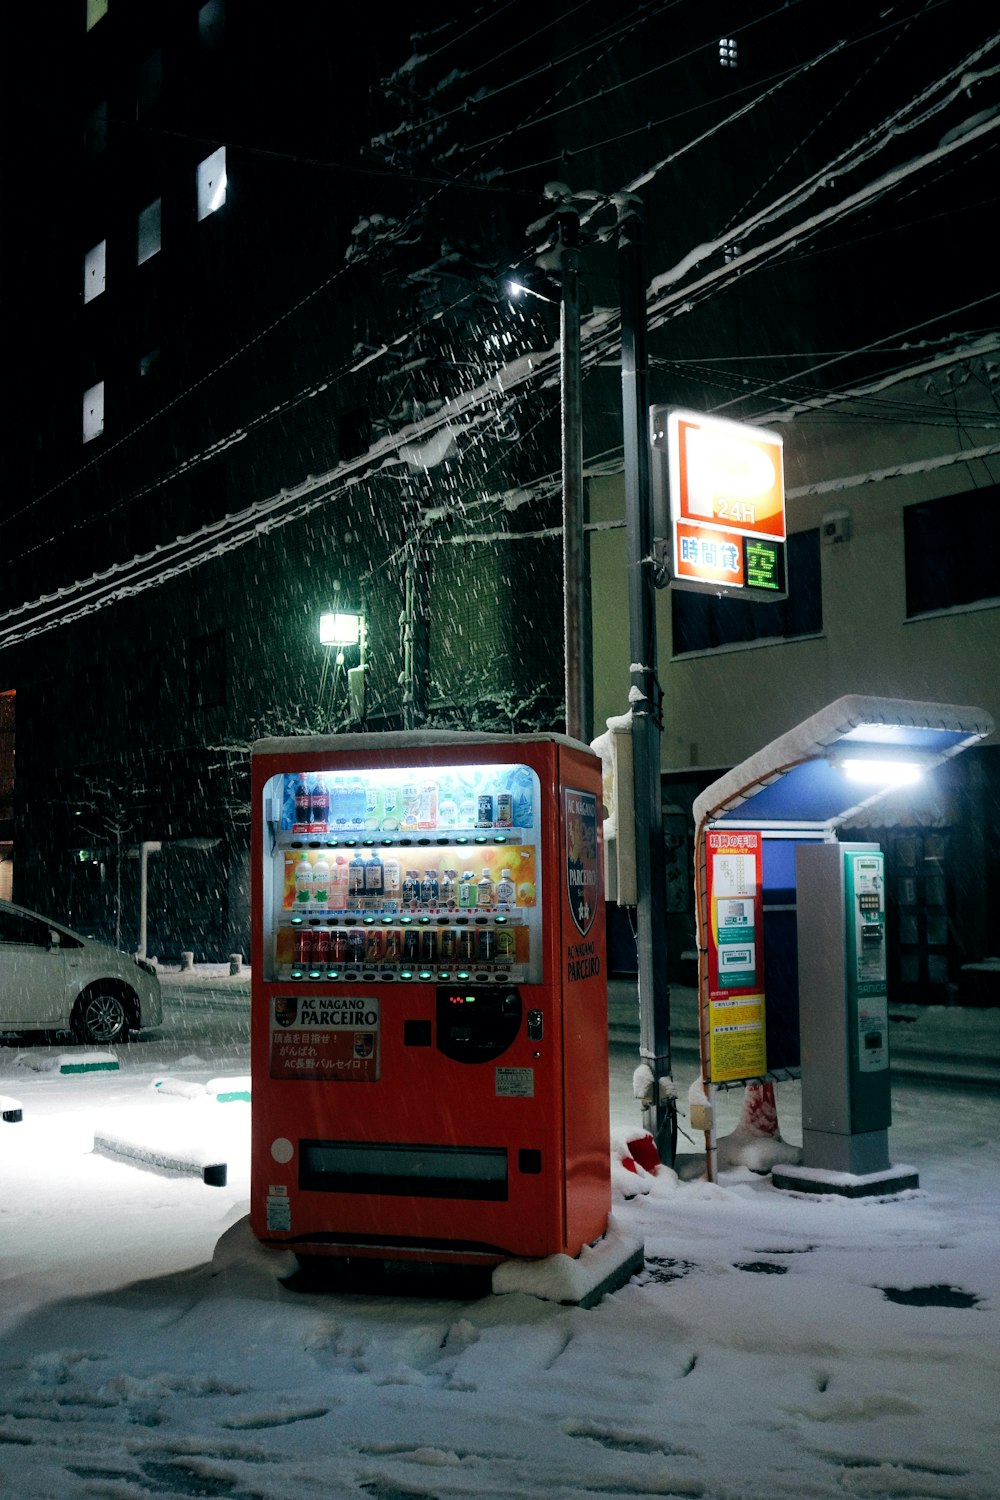 Ein roter Automat steht am Straßenrand